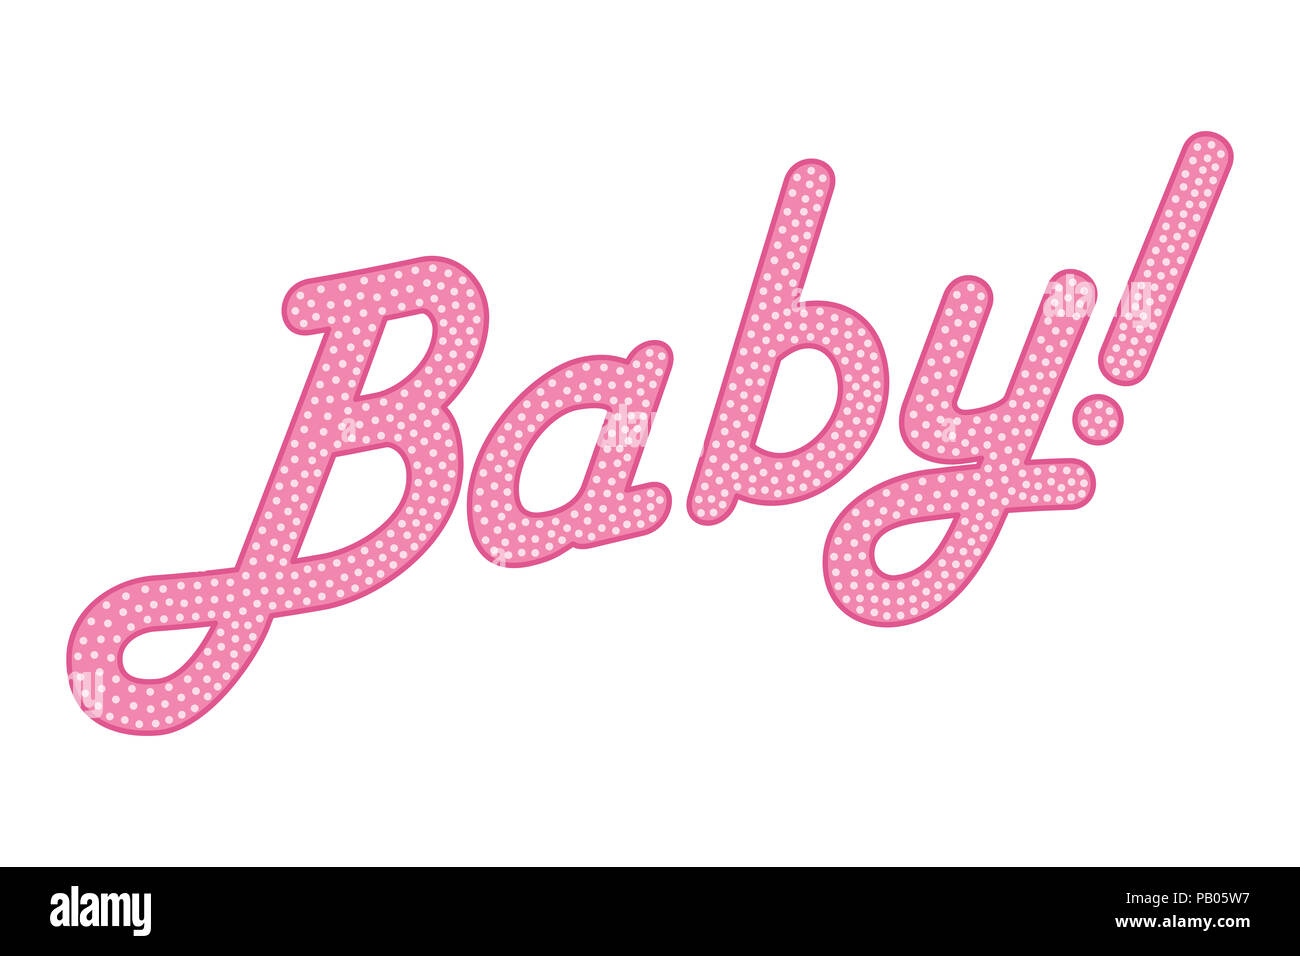 Kursiver Schrift das Wort Baby mit Rufzeichen, rosa gefärbt mit hellen und kleinen Punkten. Zufällig punktiert, Kursiv schreiben. Isoliert. Abbildung. Stockfoto